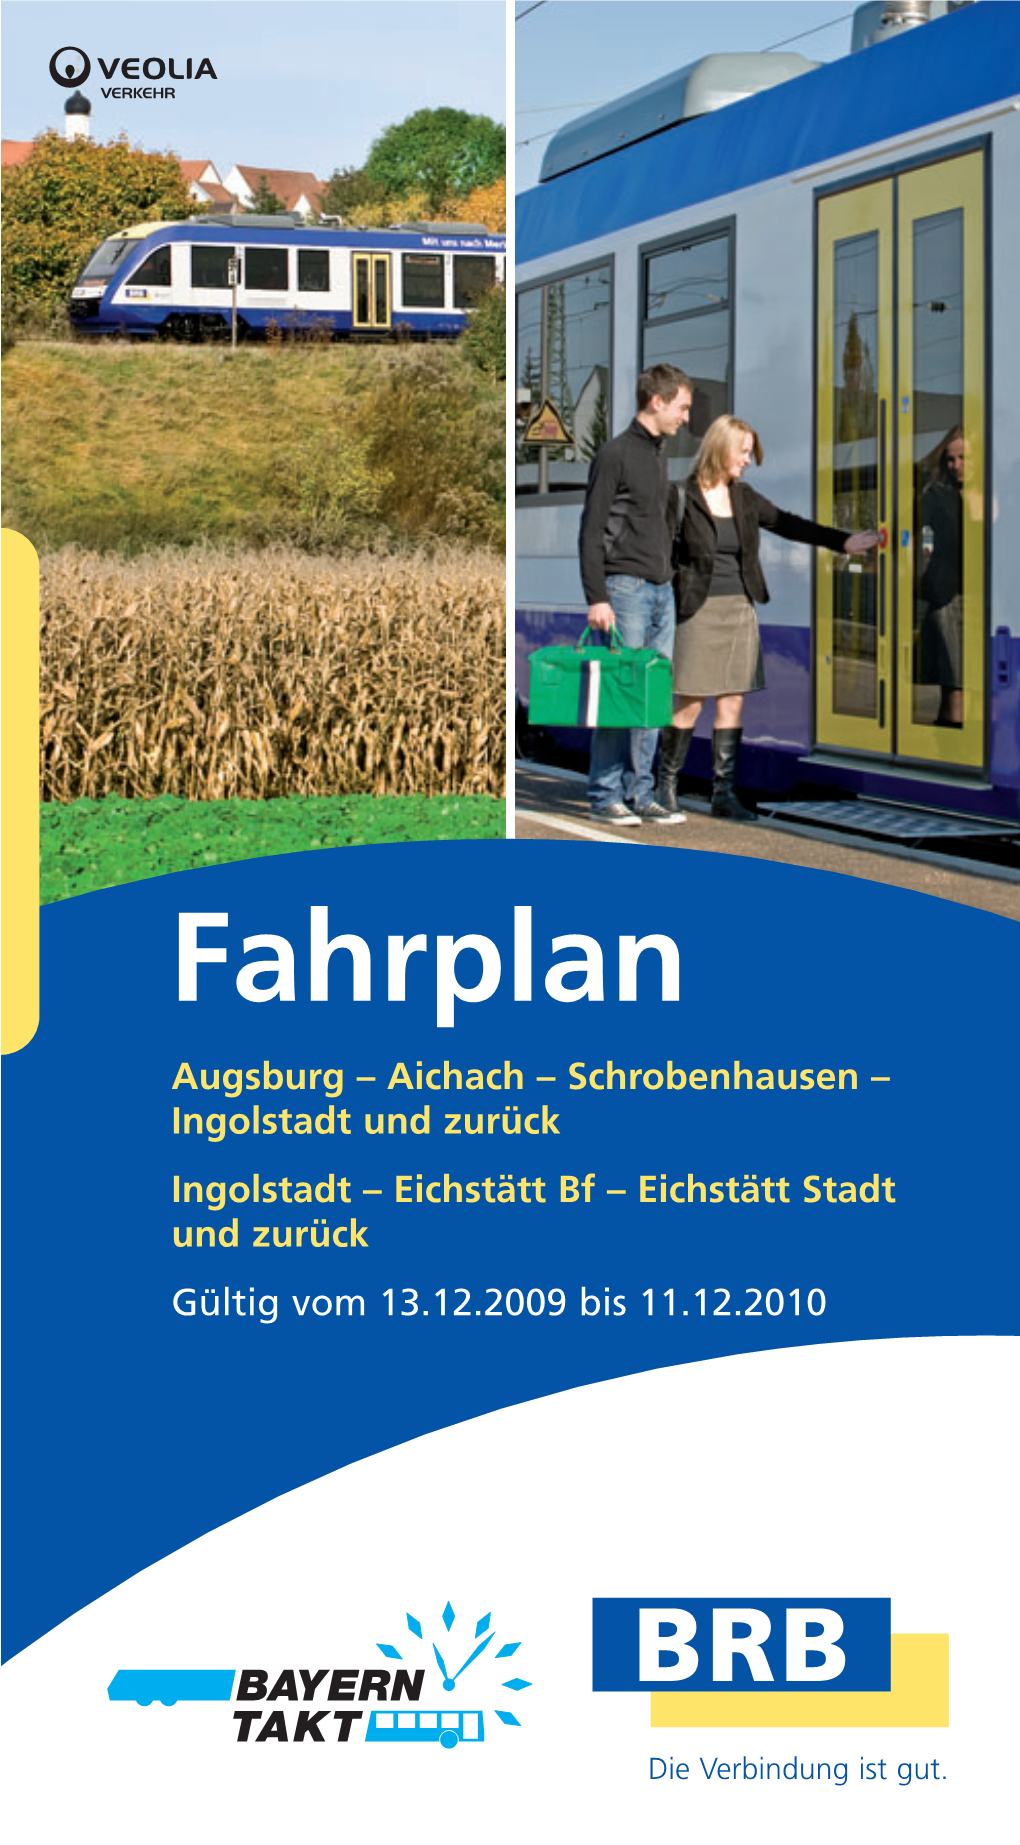 Fahrplan Augsburg – Aichach – Schrobenhausen – Ingolstadt Und Zurück Ingolstadt – Eichstätt Bf – Eichstätt Stadt Und Zurück Gültig Vom 13.12.2009 Bis 11.12.2010